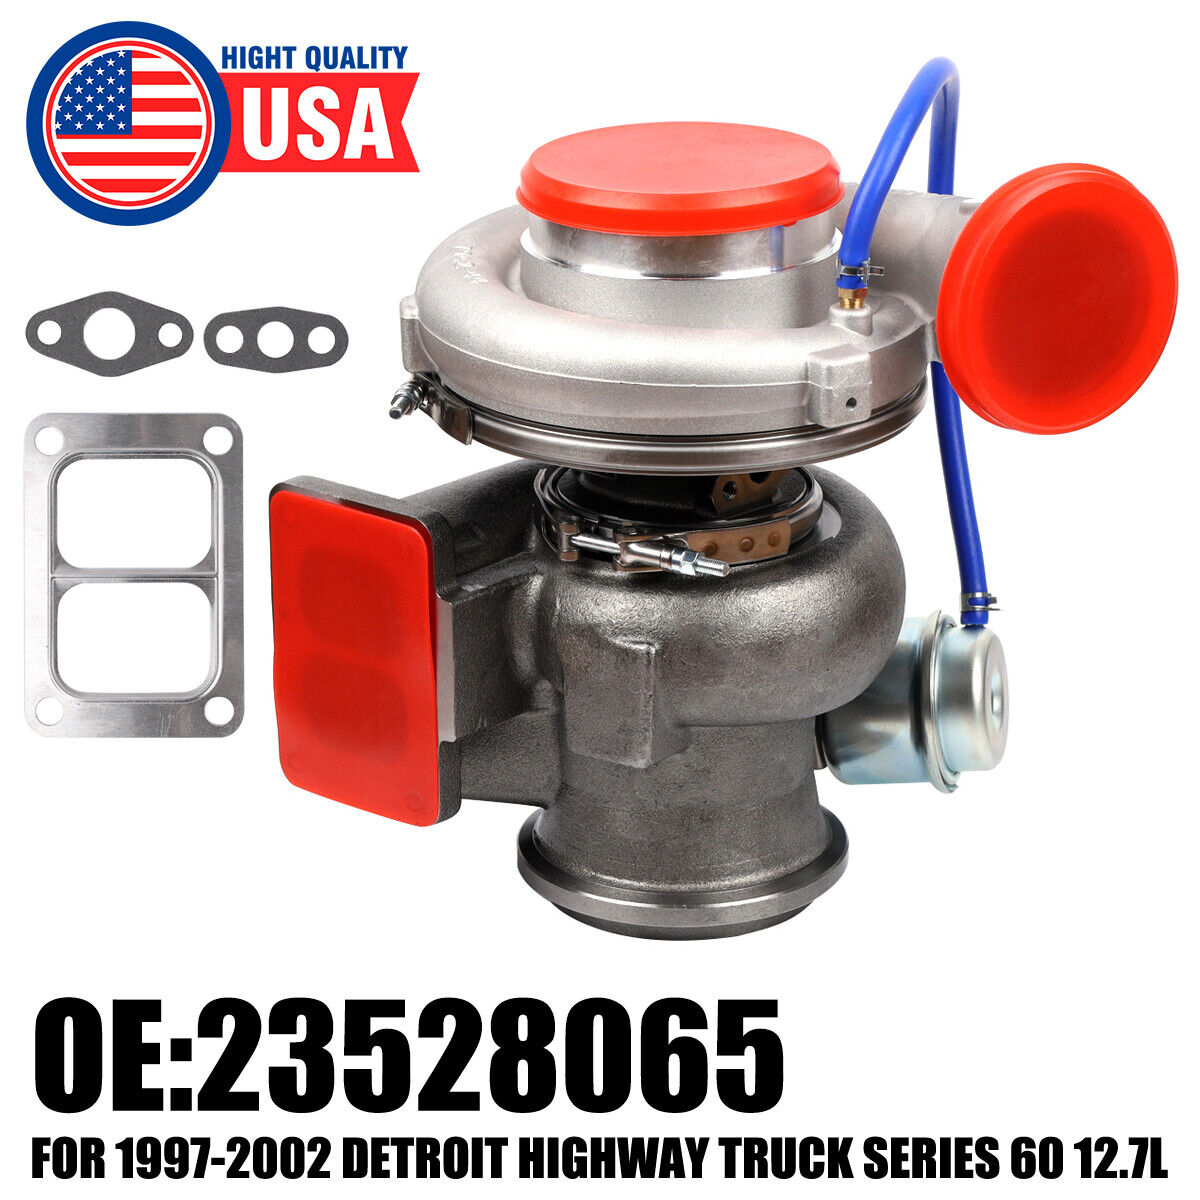 Turbo Turbocharger For 97-02 Detroit Highway Truck Series 60 12.7L K31 23528065.